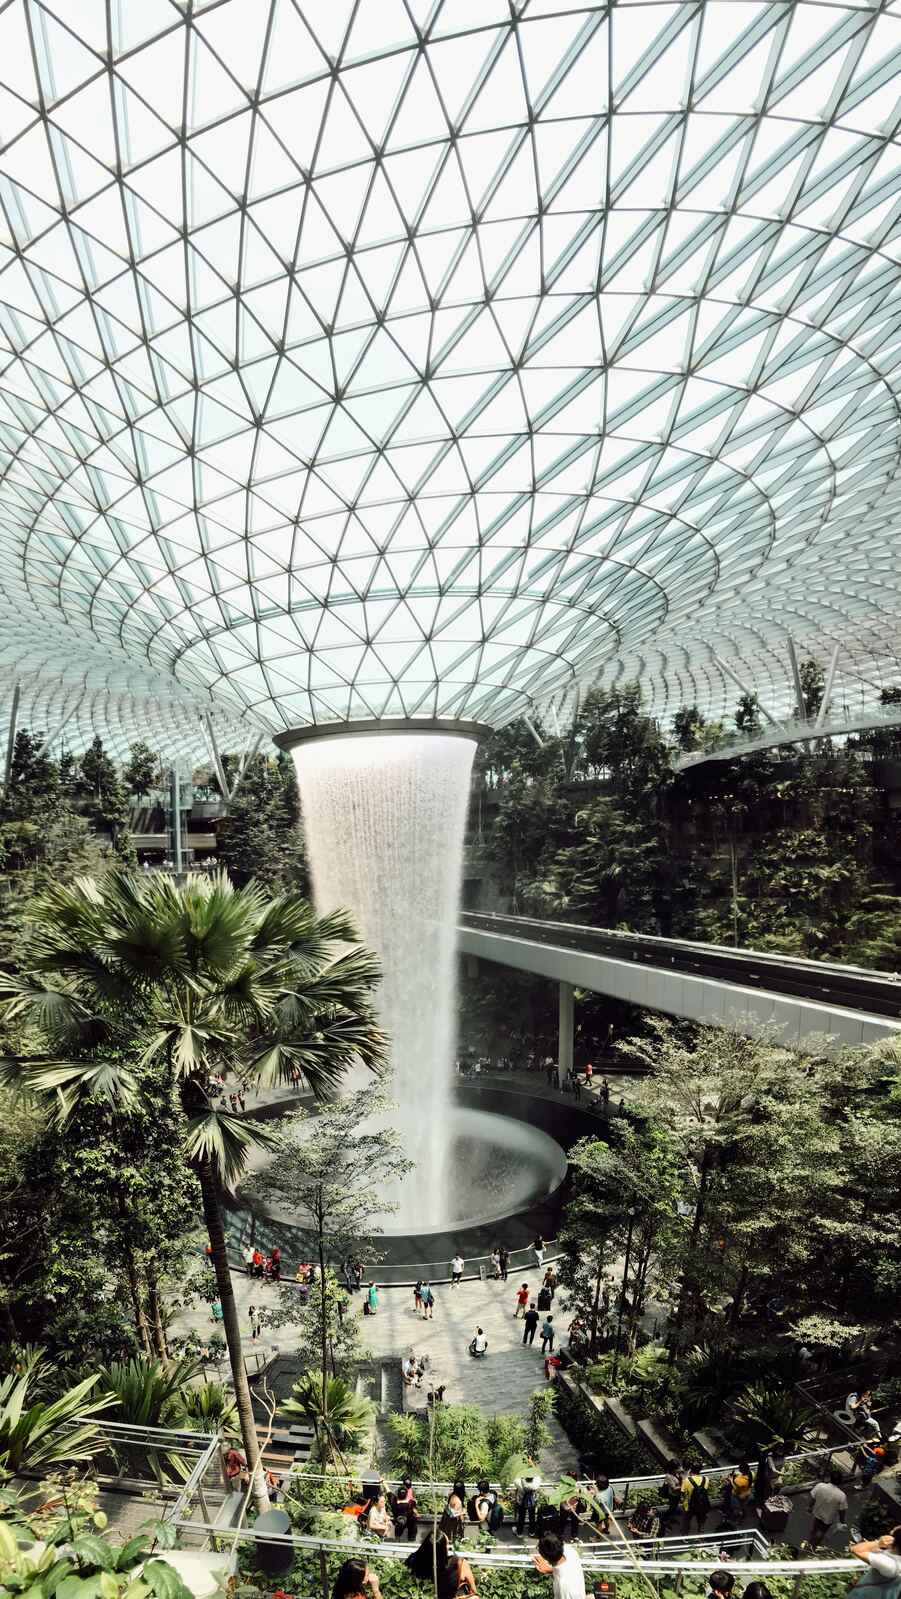 Image of Rain Vortex, Changi Airport by Team PhotoHound